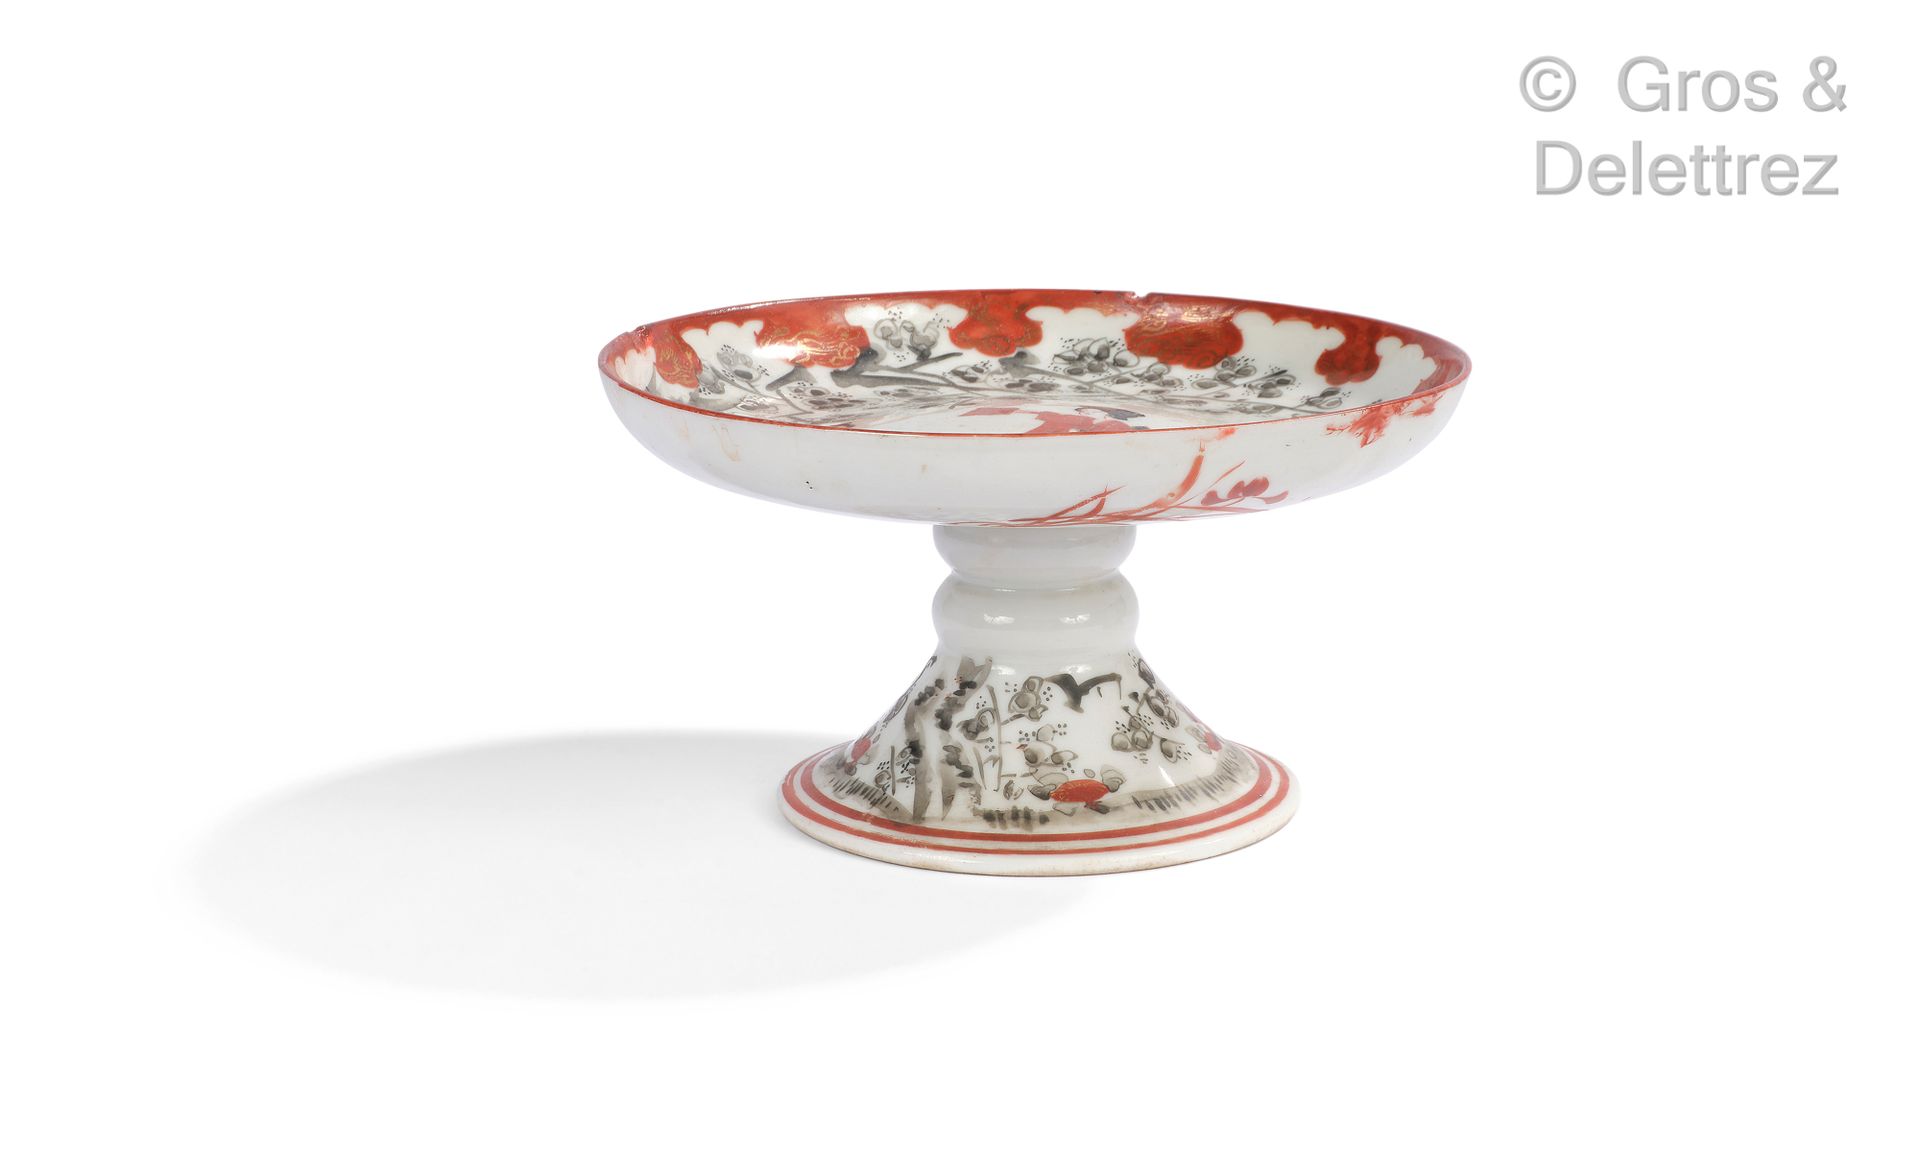 Null 日本。红色和灰色的珐琅彩瓷盘，装饰着花枝下的持扇妇女。

高度：8厘米

薯片